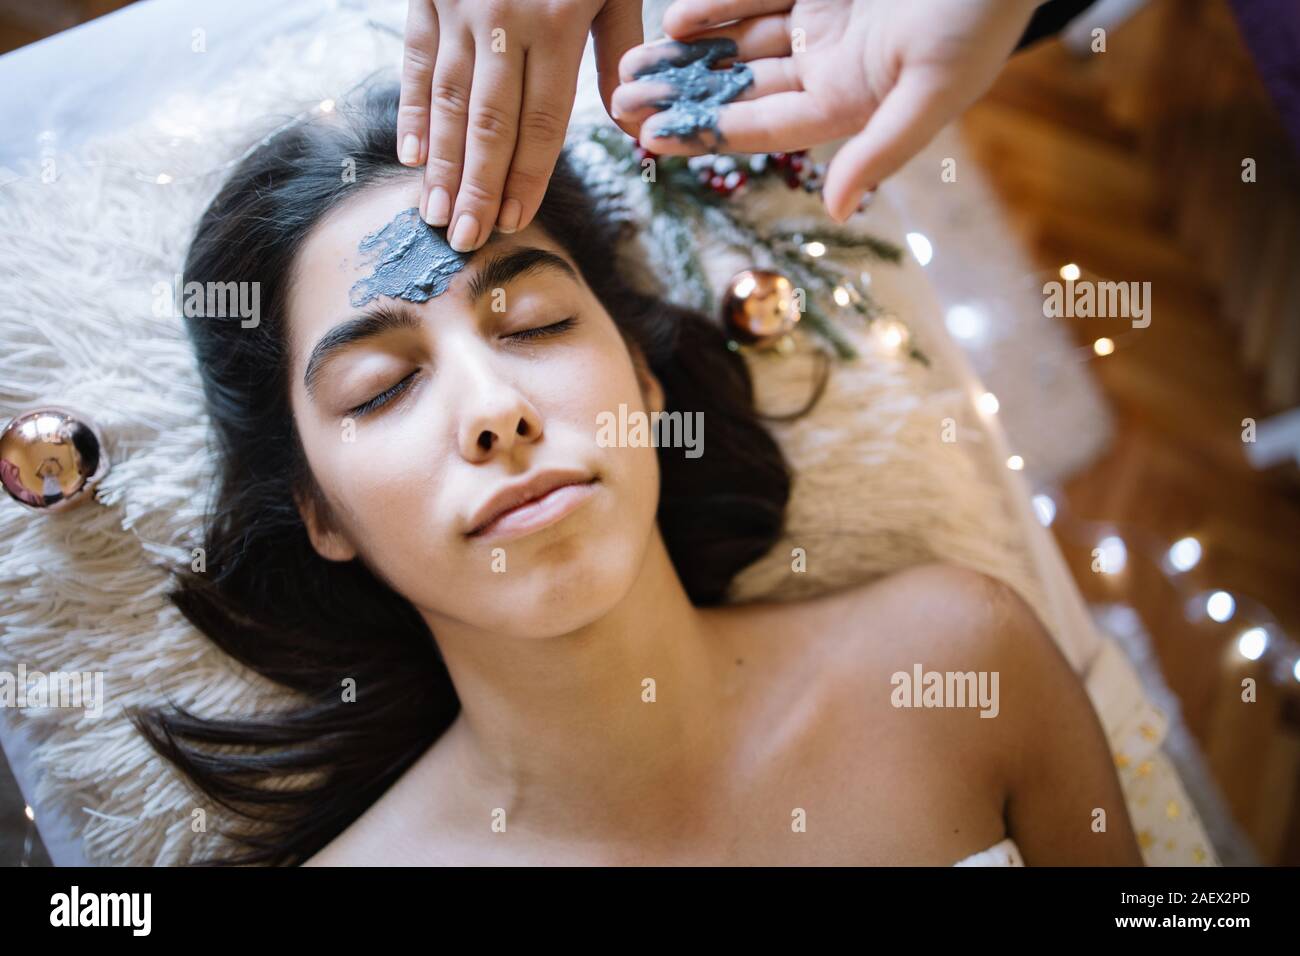 Therapeuten, die Maske auf Girl's Stirn im SPA Salon. Weibliche Hände Anwendung Holzkohle Maske auf das Gesicht einer Frau liegend auf Bett mit Lichter und weihnachtliche Stockfoto